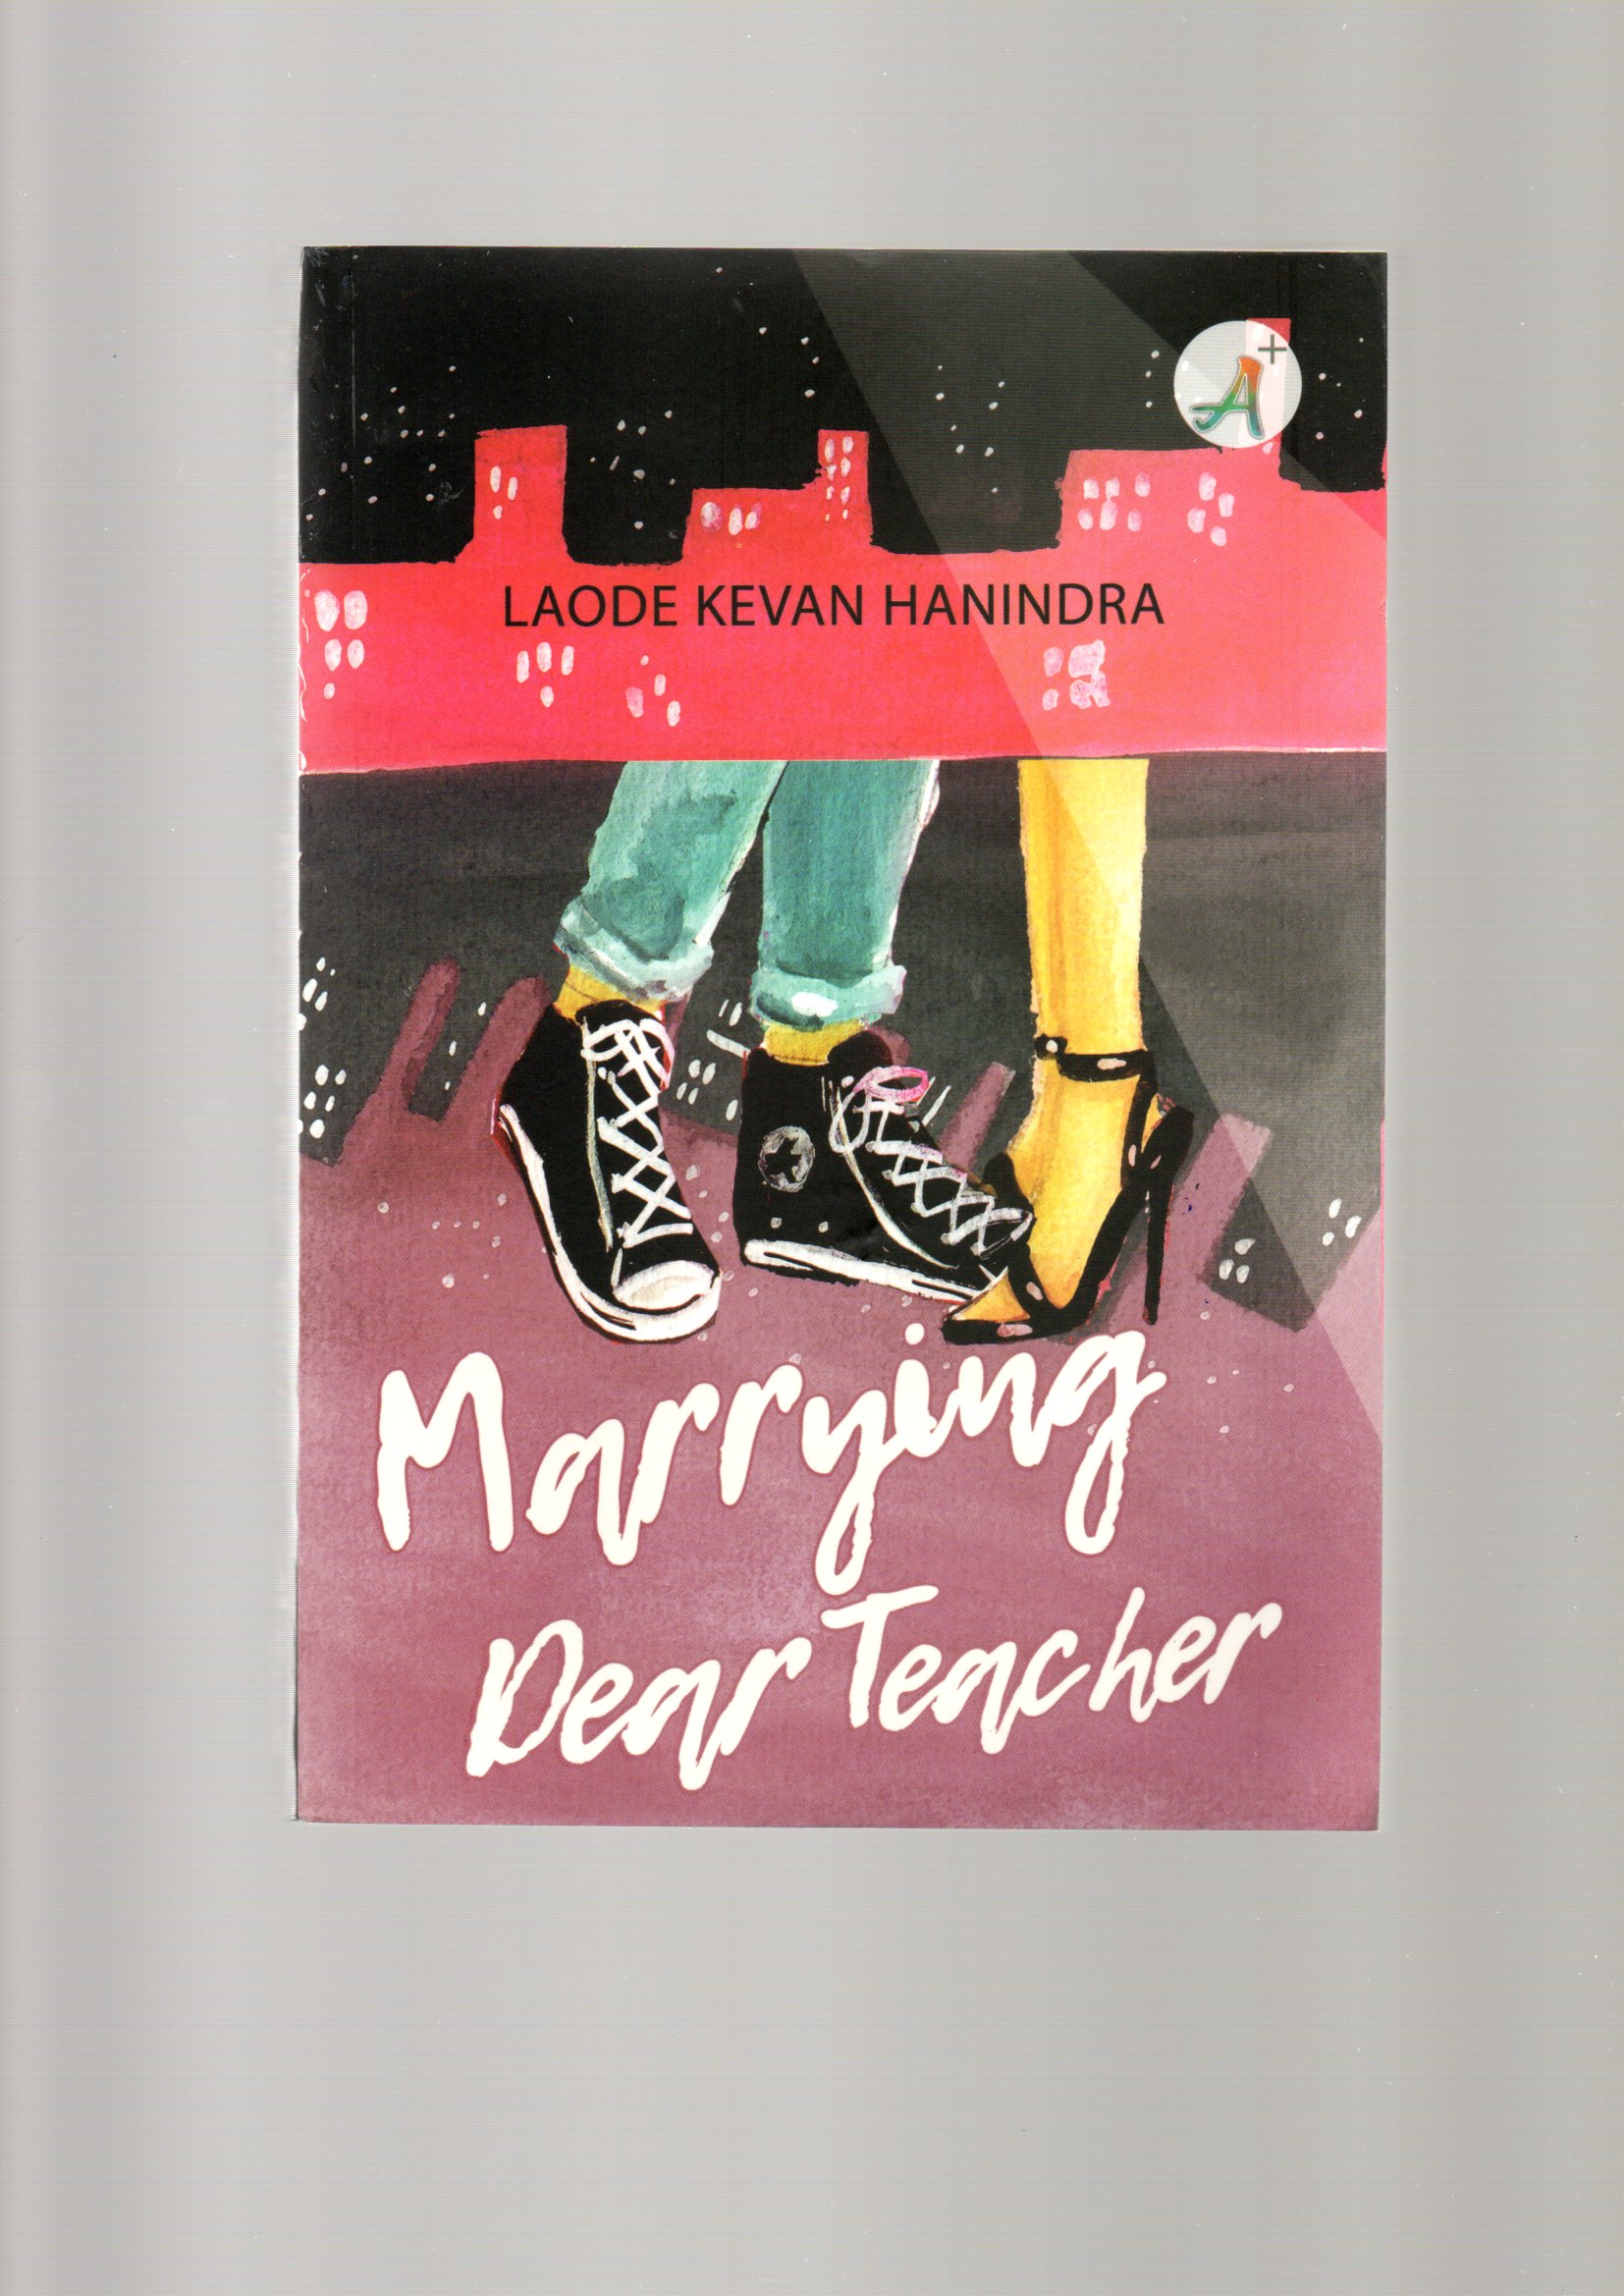 Marrying dear teacher